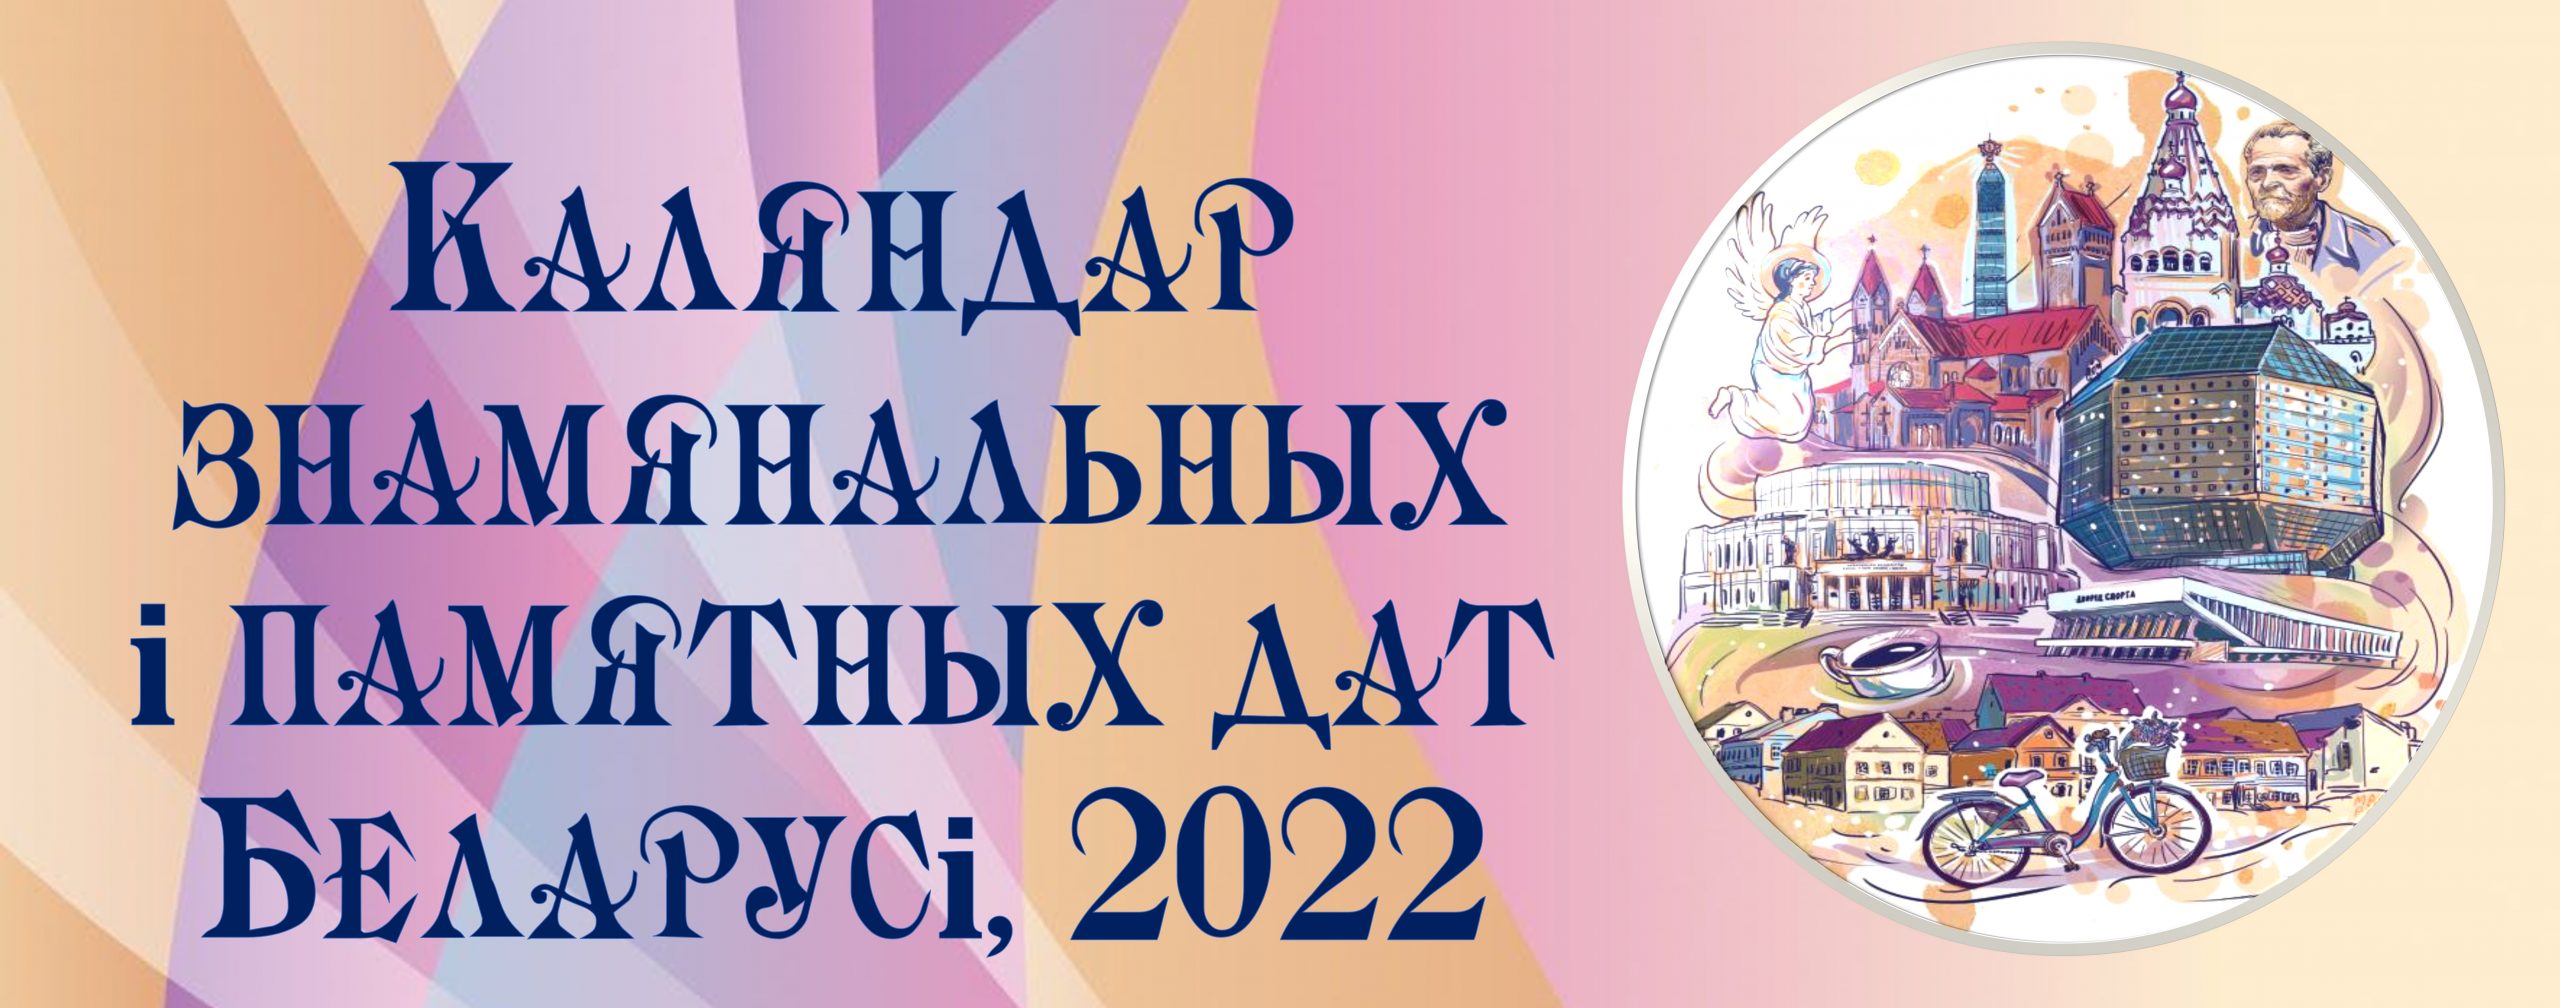 Календарь памятных и юбилейных дат белорусского календаря, 2022 | Сеть  публичных библиотек Вилейского района